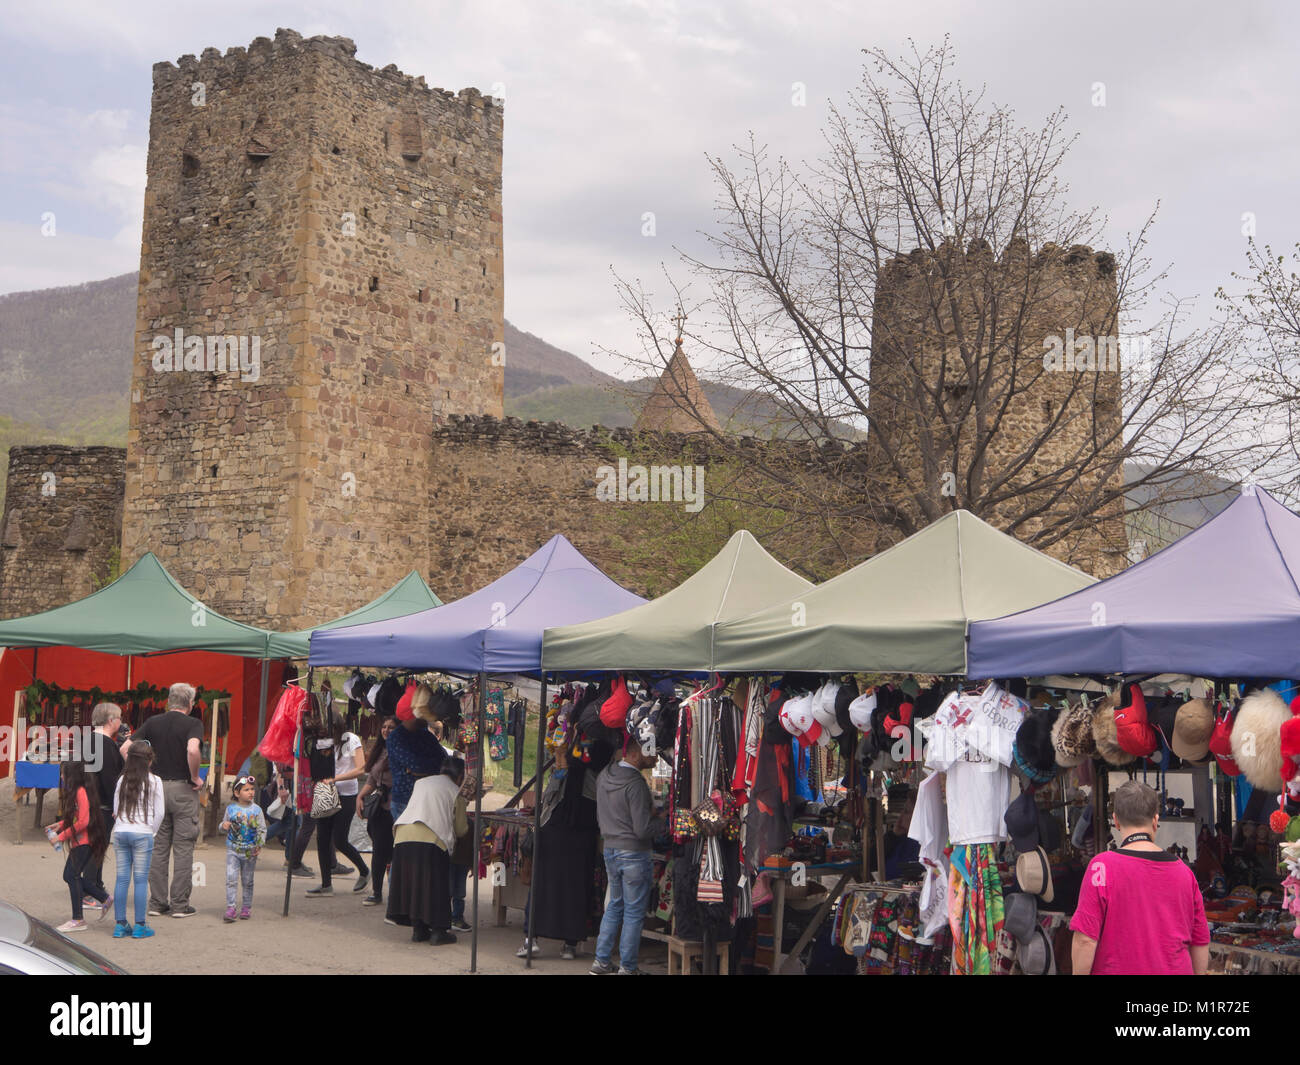 À la forteresse, un château médiéval et le siège de la section locale (eristavis ducs)une attraction touristique avec des marchands de souvenirs dans le haut Caucase en Géorgie Banque D'Images